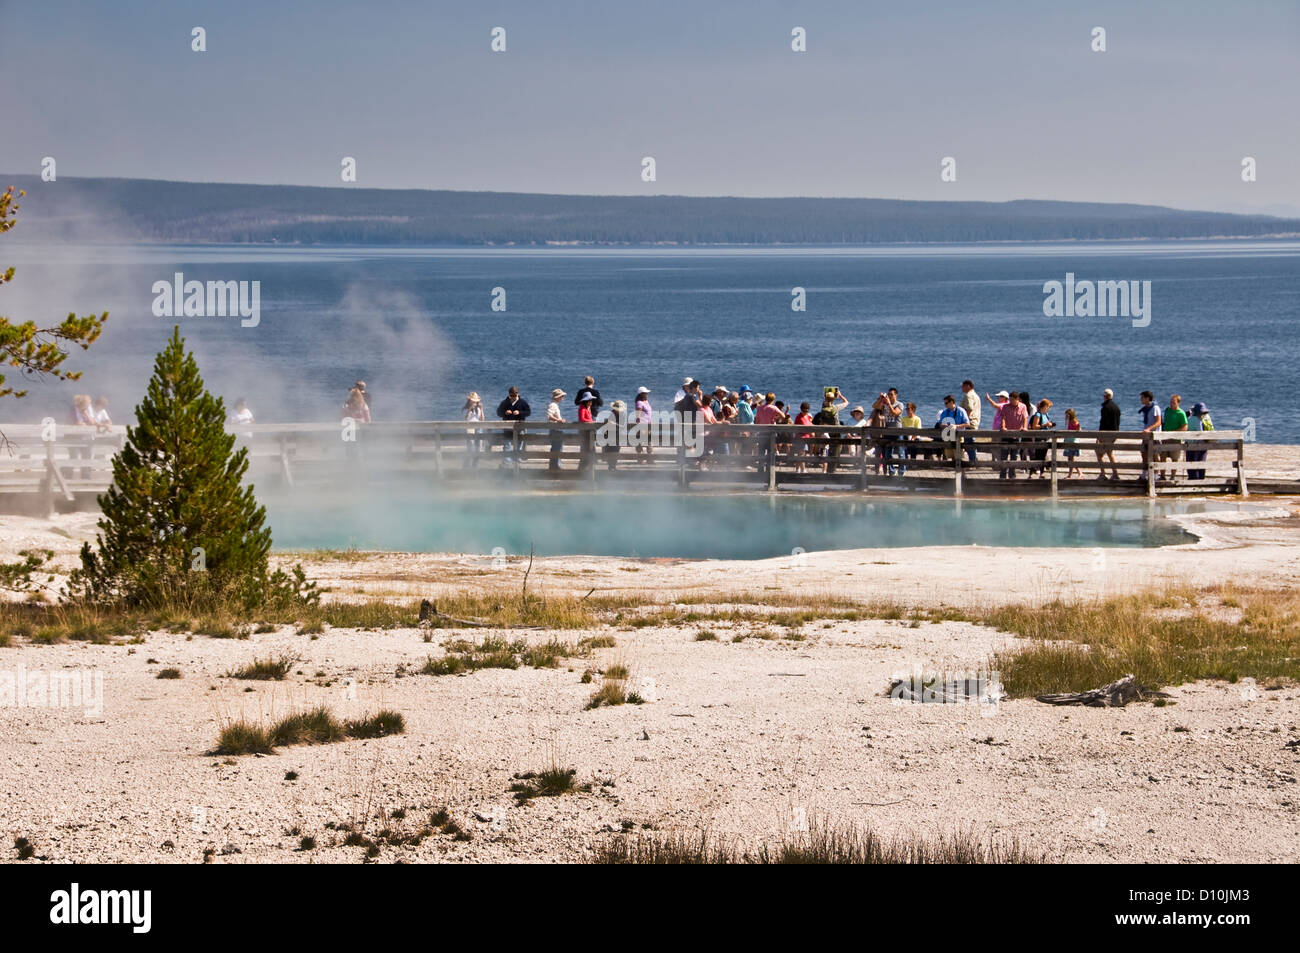 Les touristes l'observation d'un printemps très chaud - West Thumb geyser basin, le Lac Yellowstone, le parc national de Yellowstone, Wyoming, USA Banque D'Images